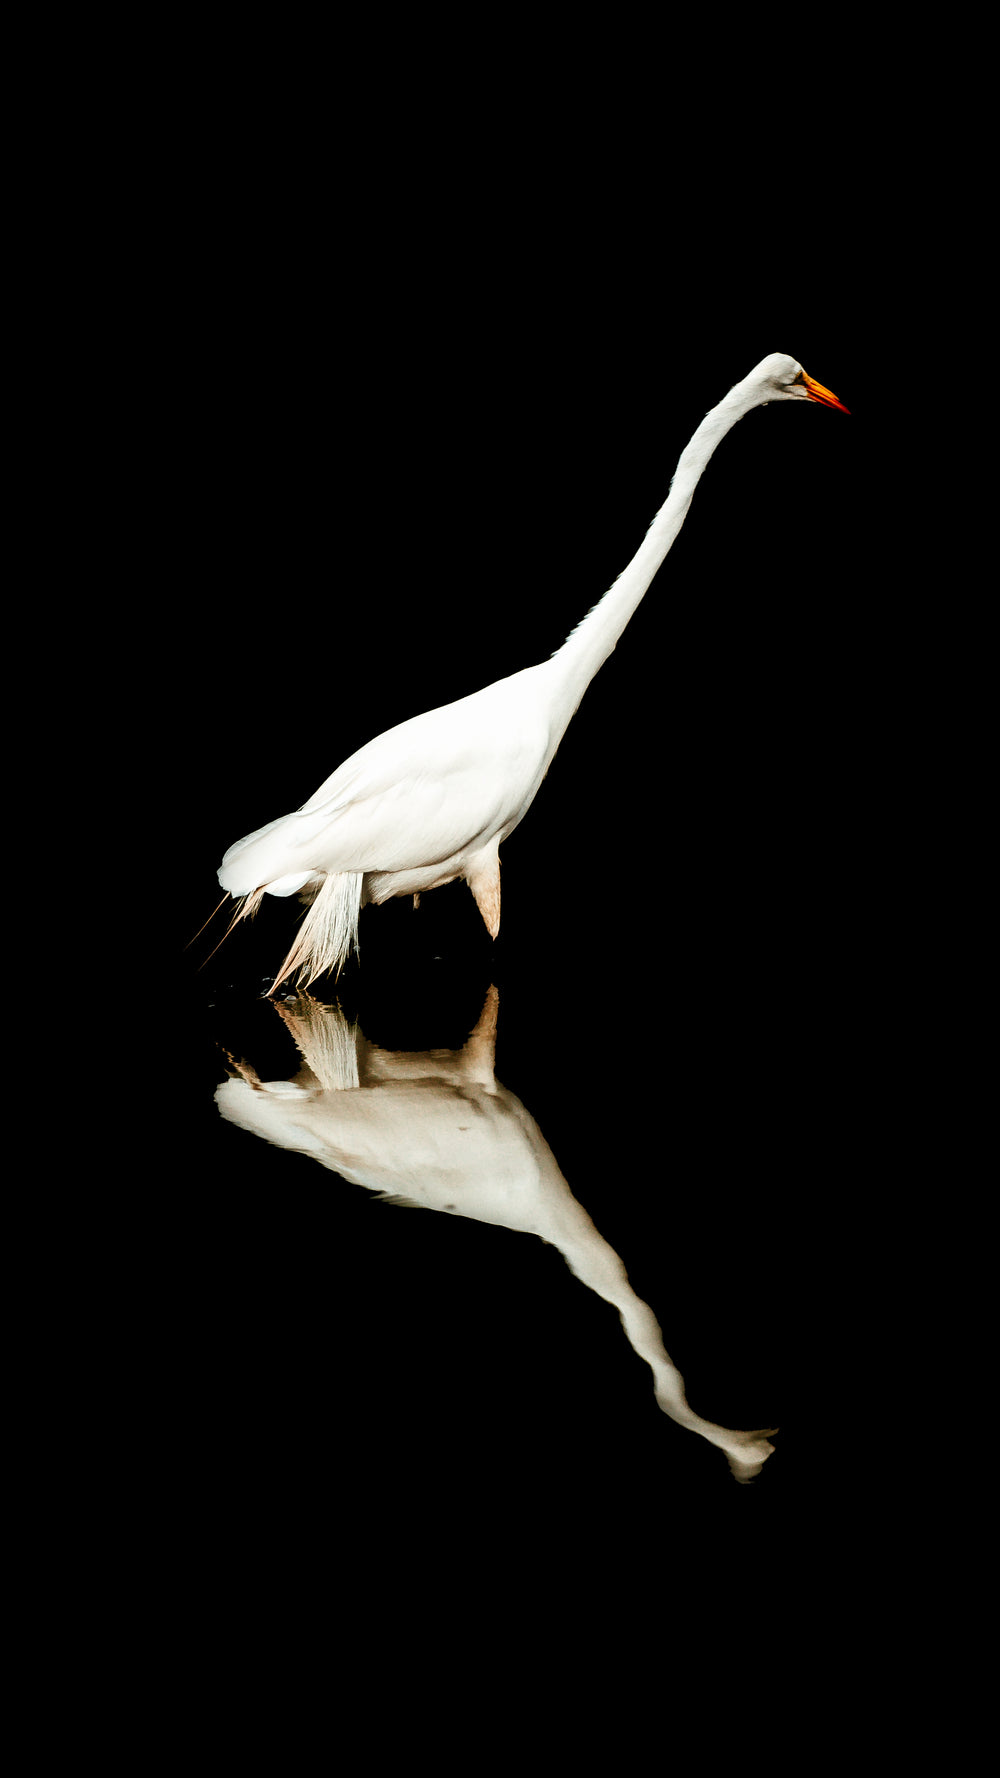 white crane reflection in dark water